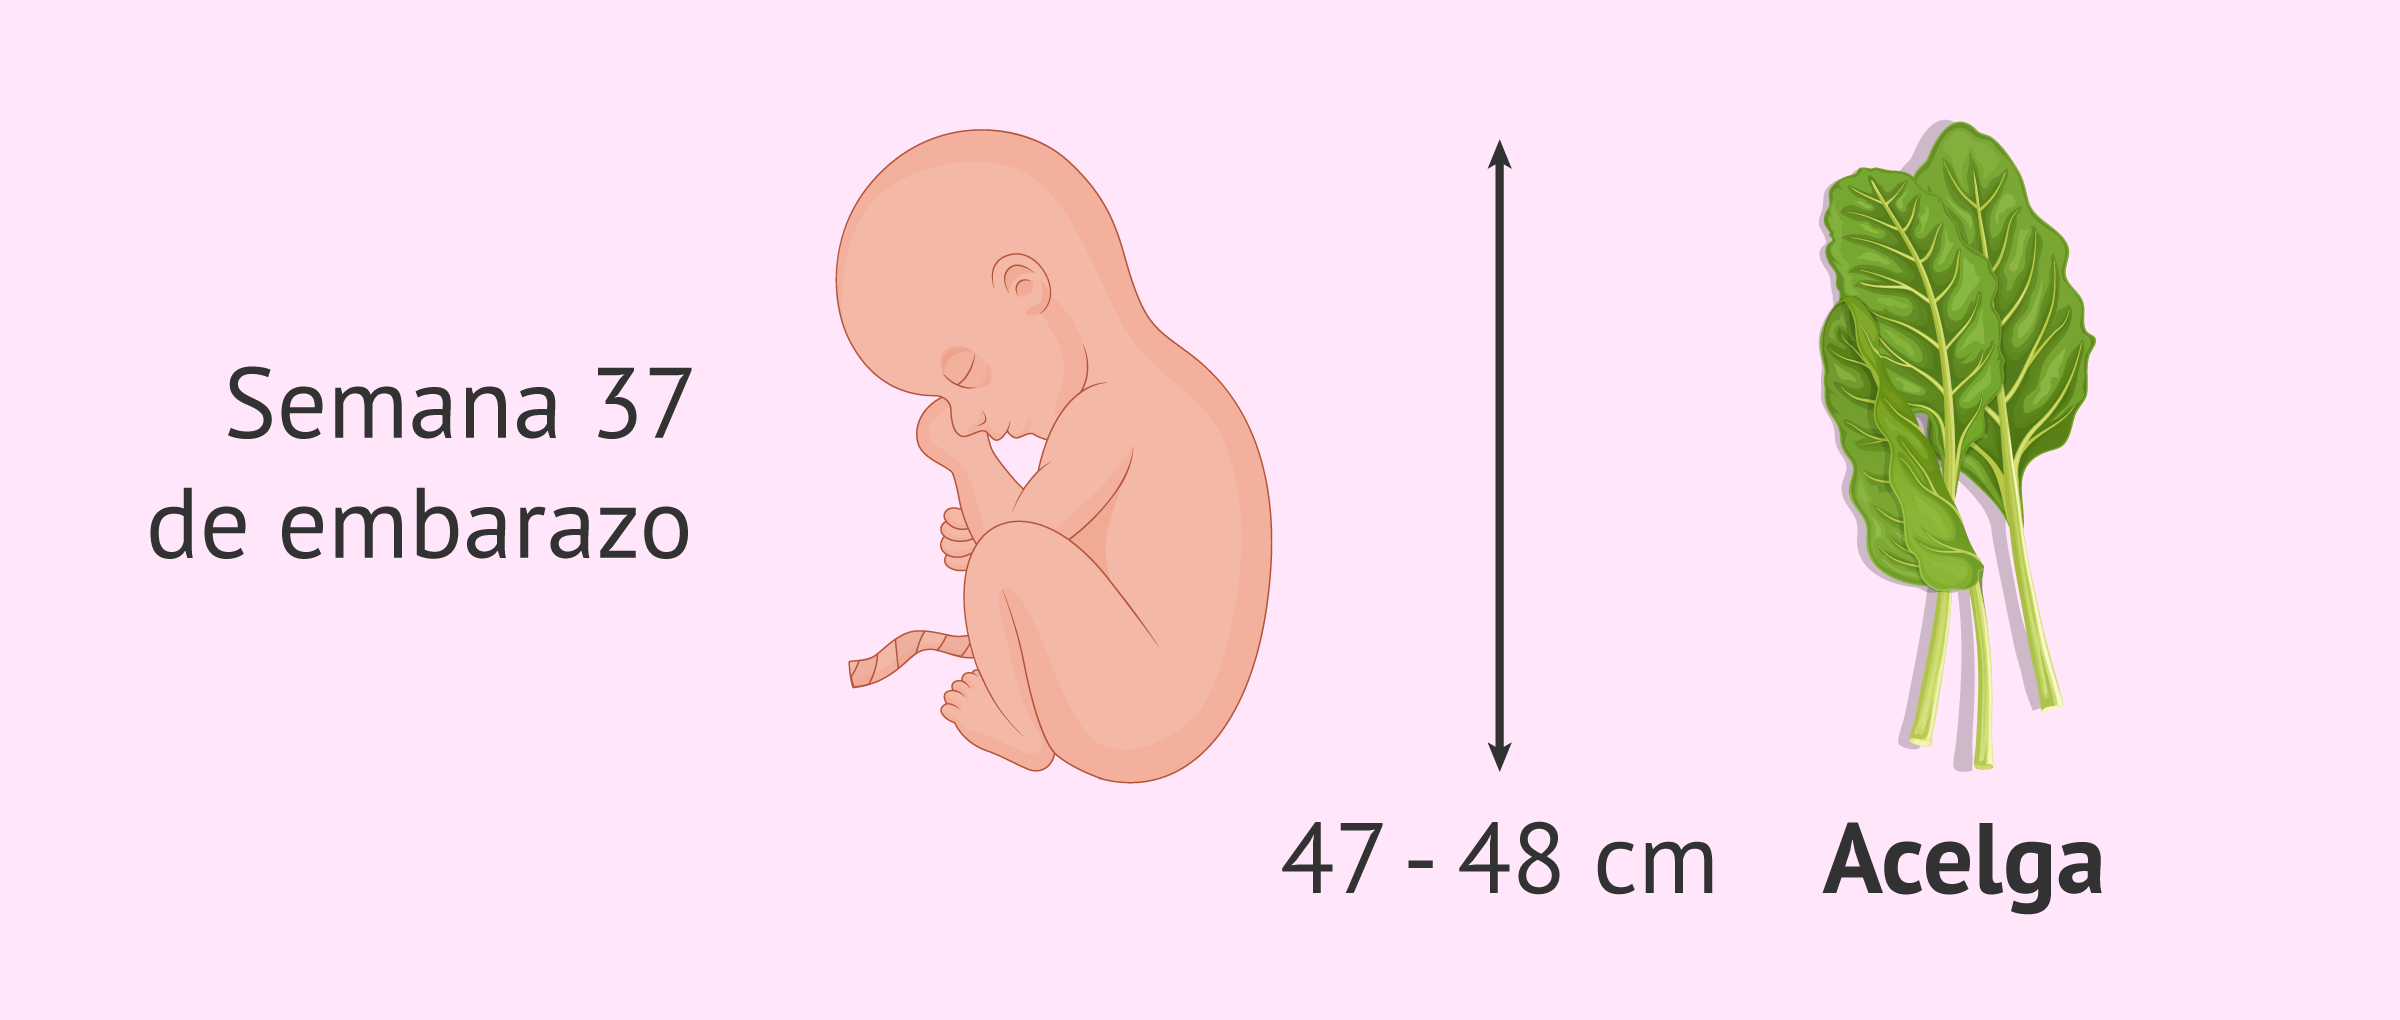 Micralax embarazo se puede usar